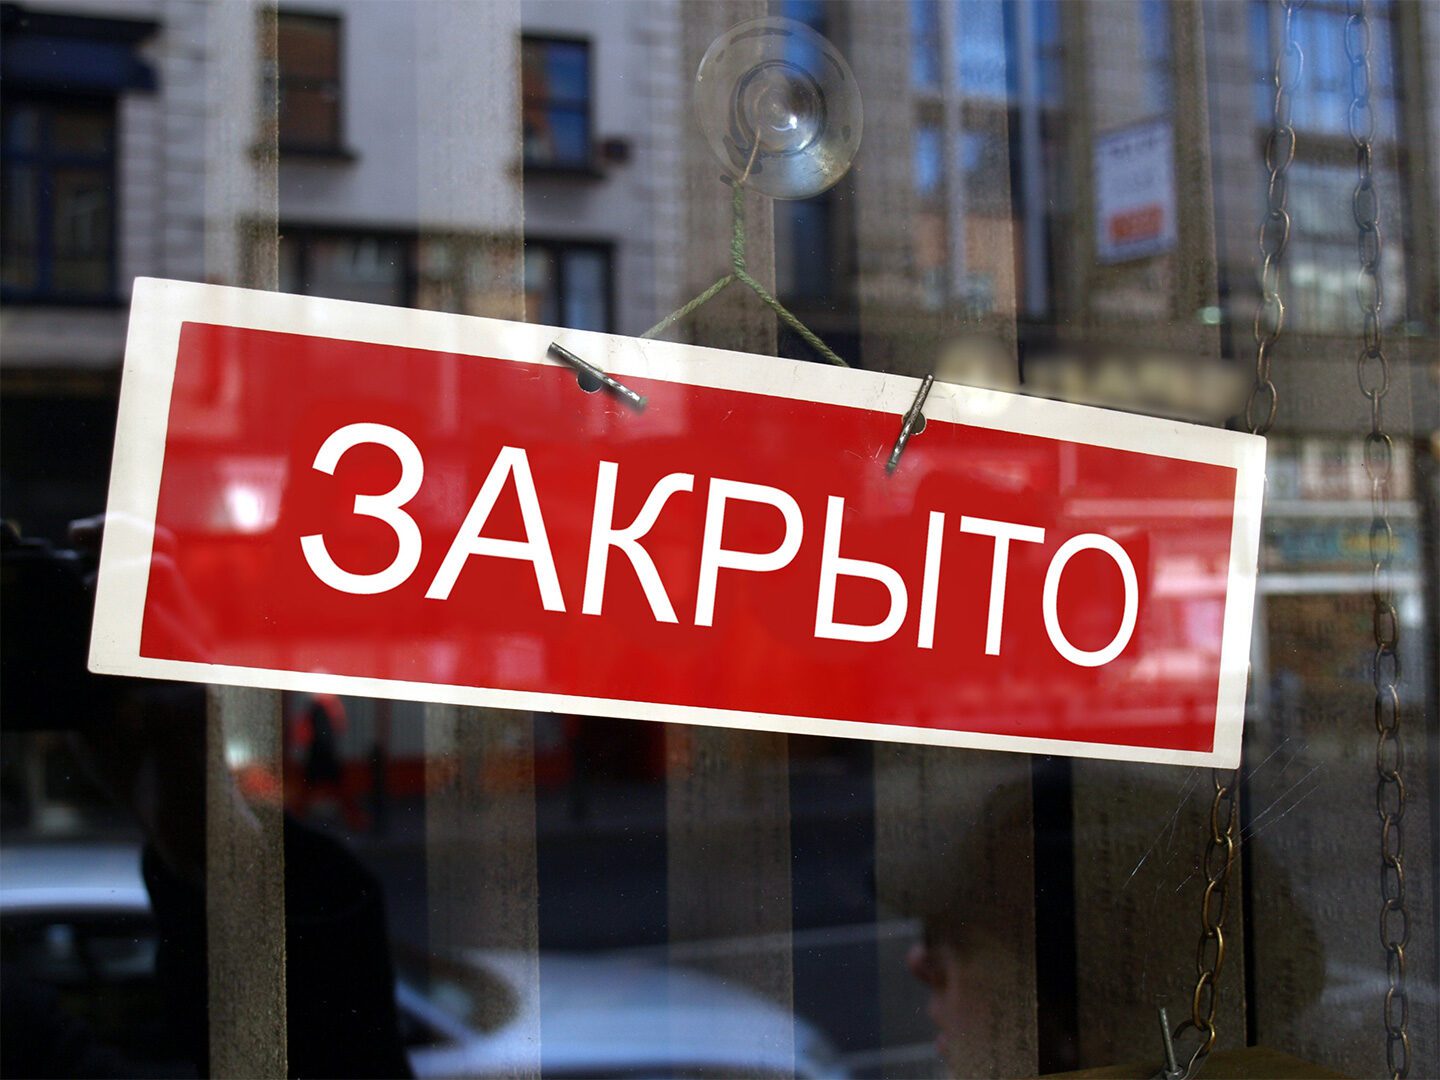 An einer Scheibe hängt ein Schild mit russischen Schriftzeichen.